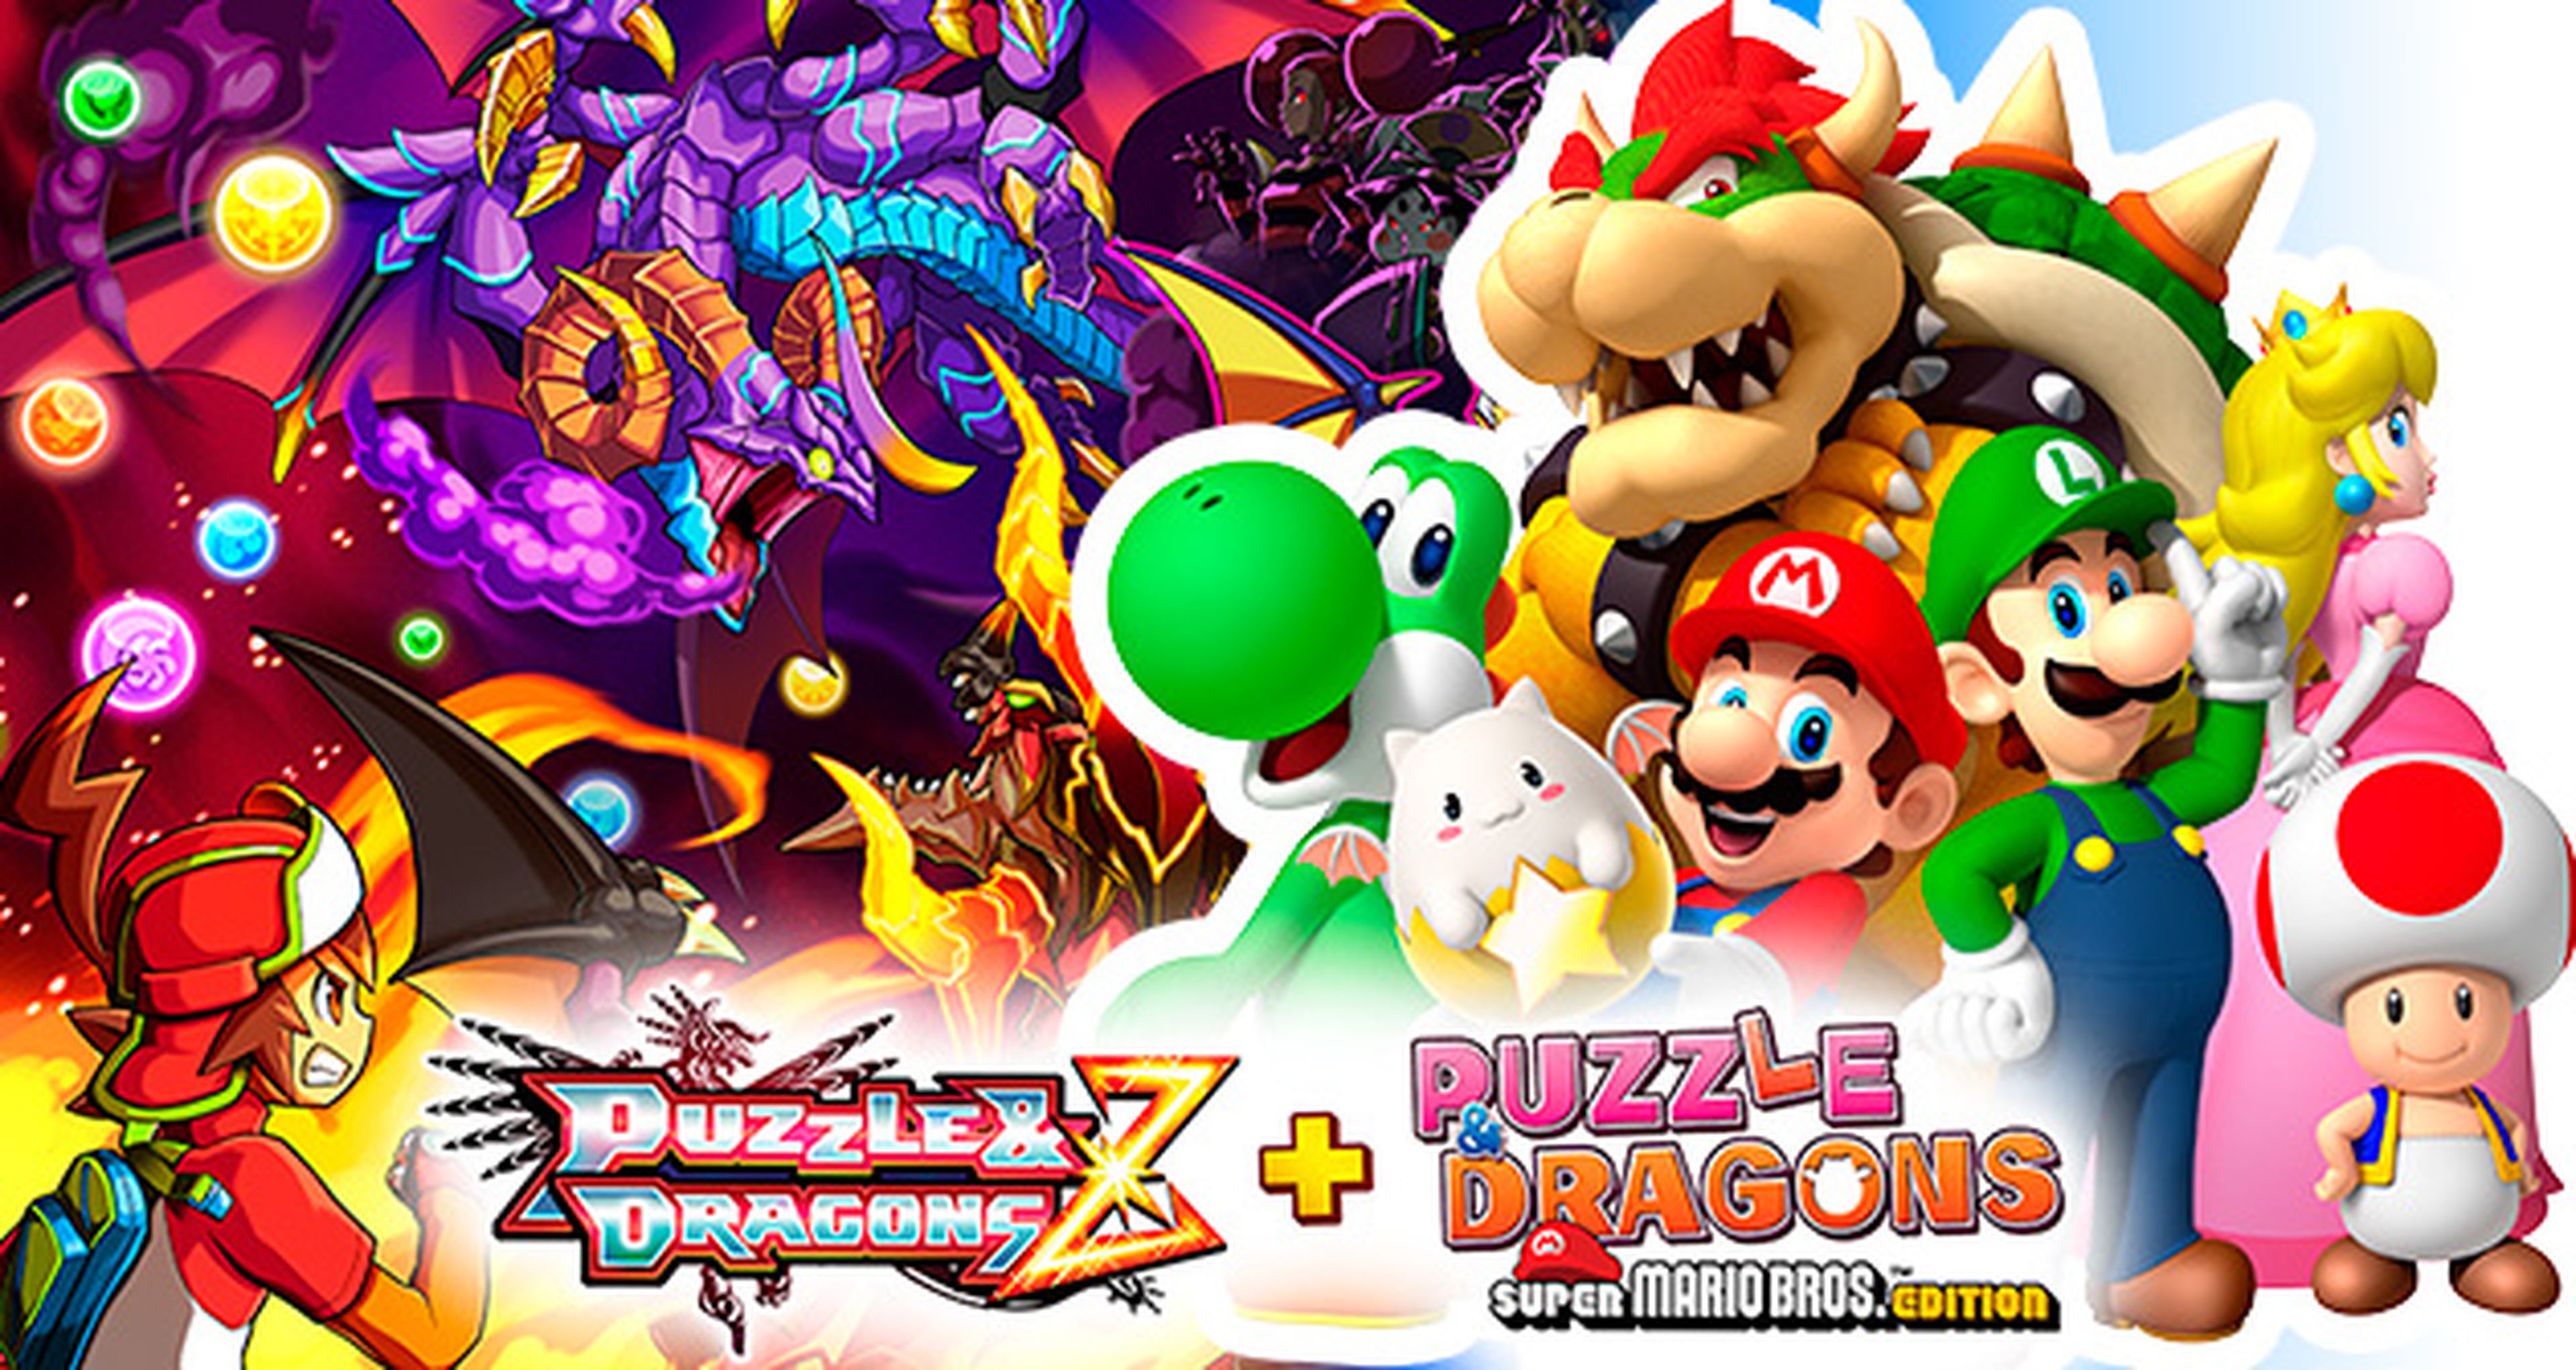 Avance de Puzzle &amp; Dragons Z + Super Mario Bros. Edition